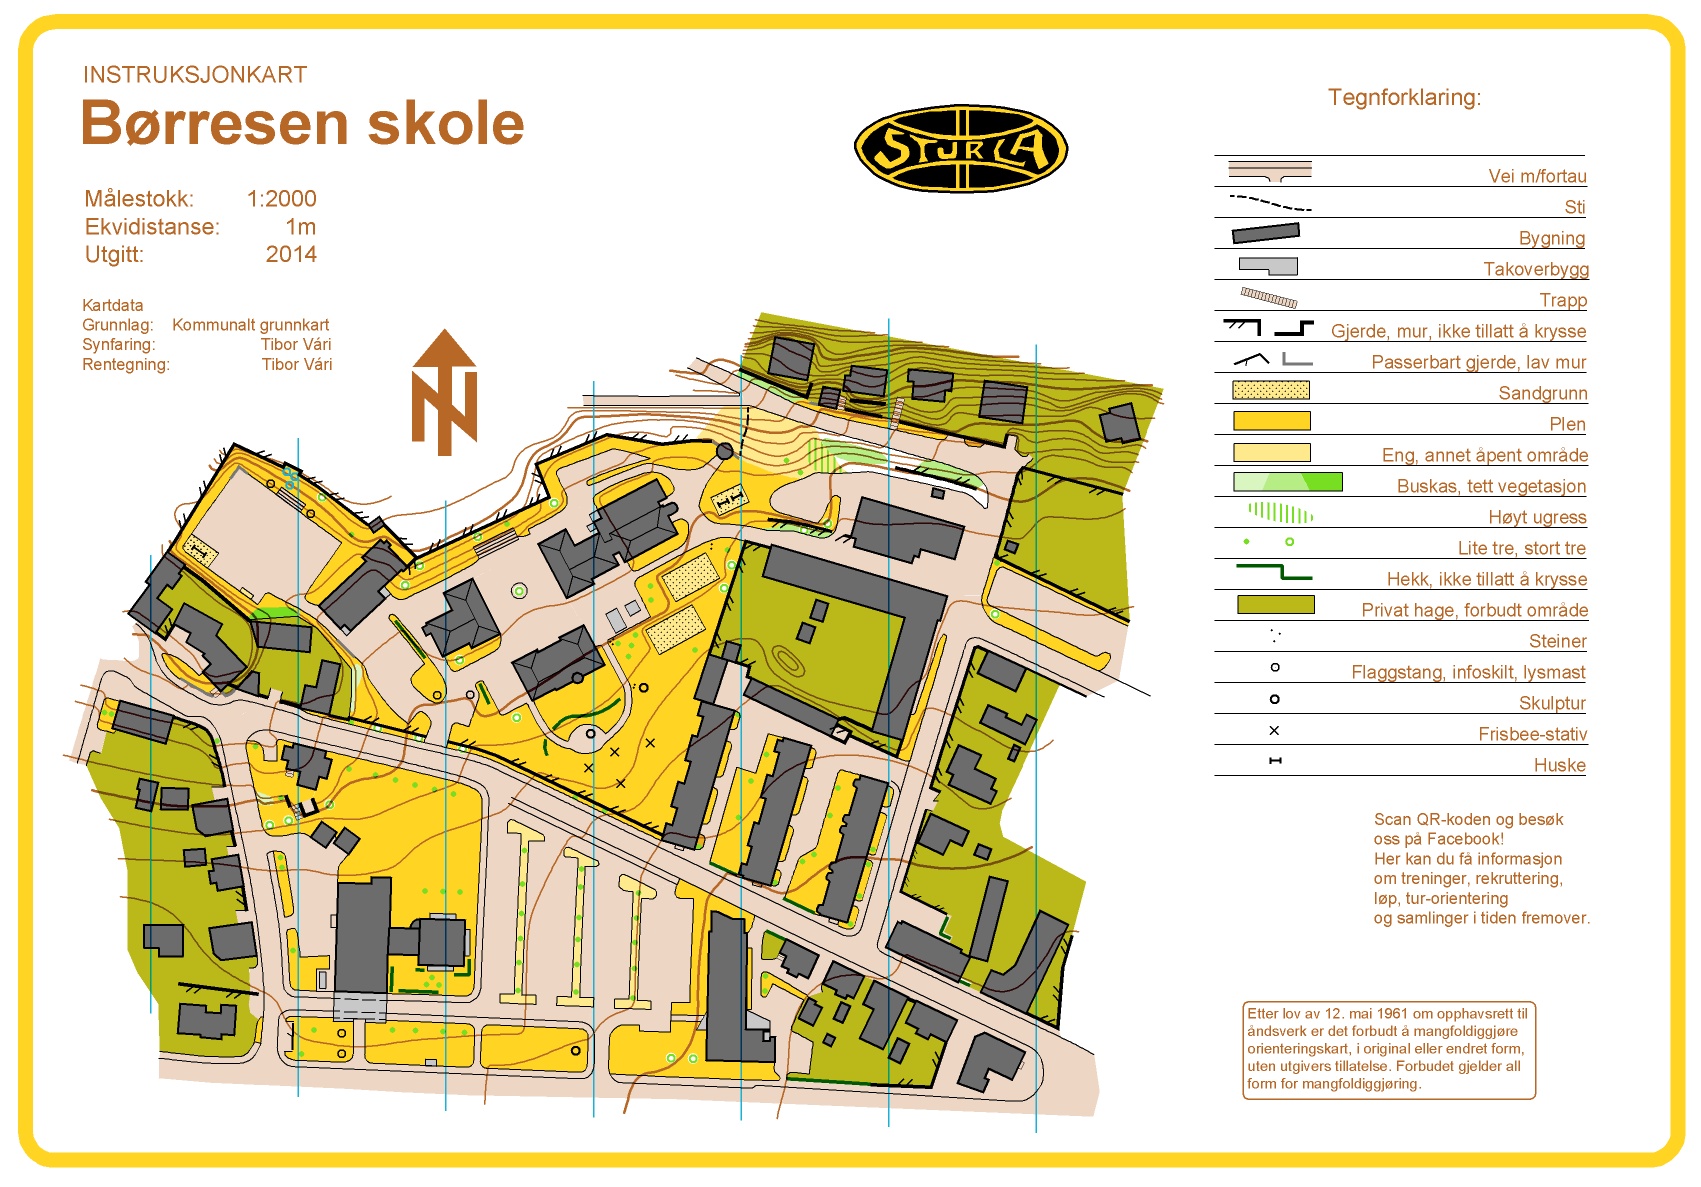 Instruksjonskart - Børresen (13.02.2014)